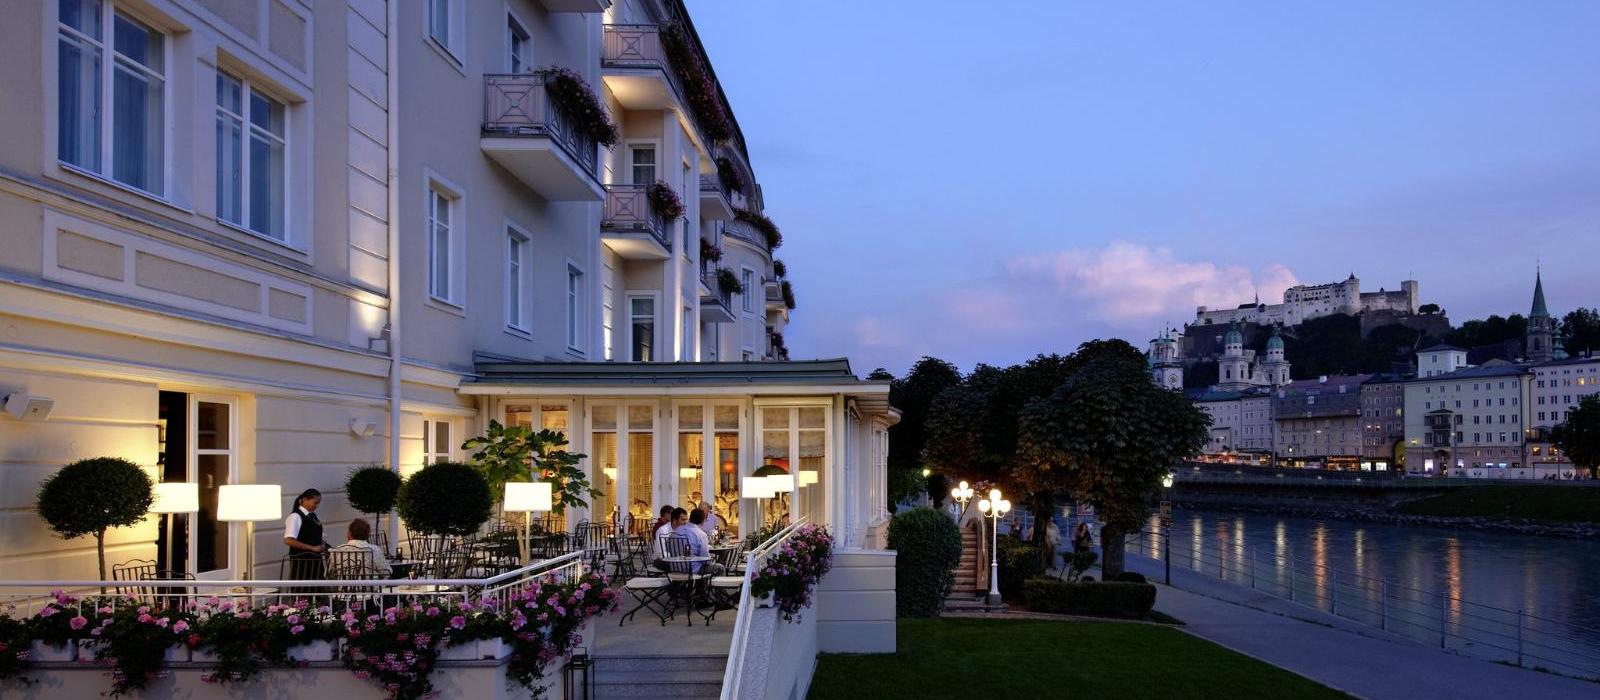 萨尔茨堡萨赫酒店(Hotel Sacher Salzburg) Sacher Bar 露台夜景图片  www.lhw.cn